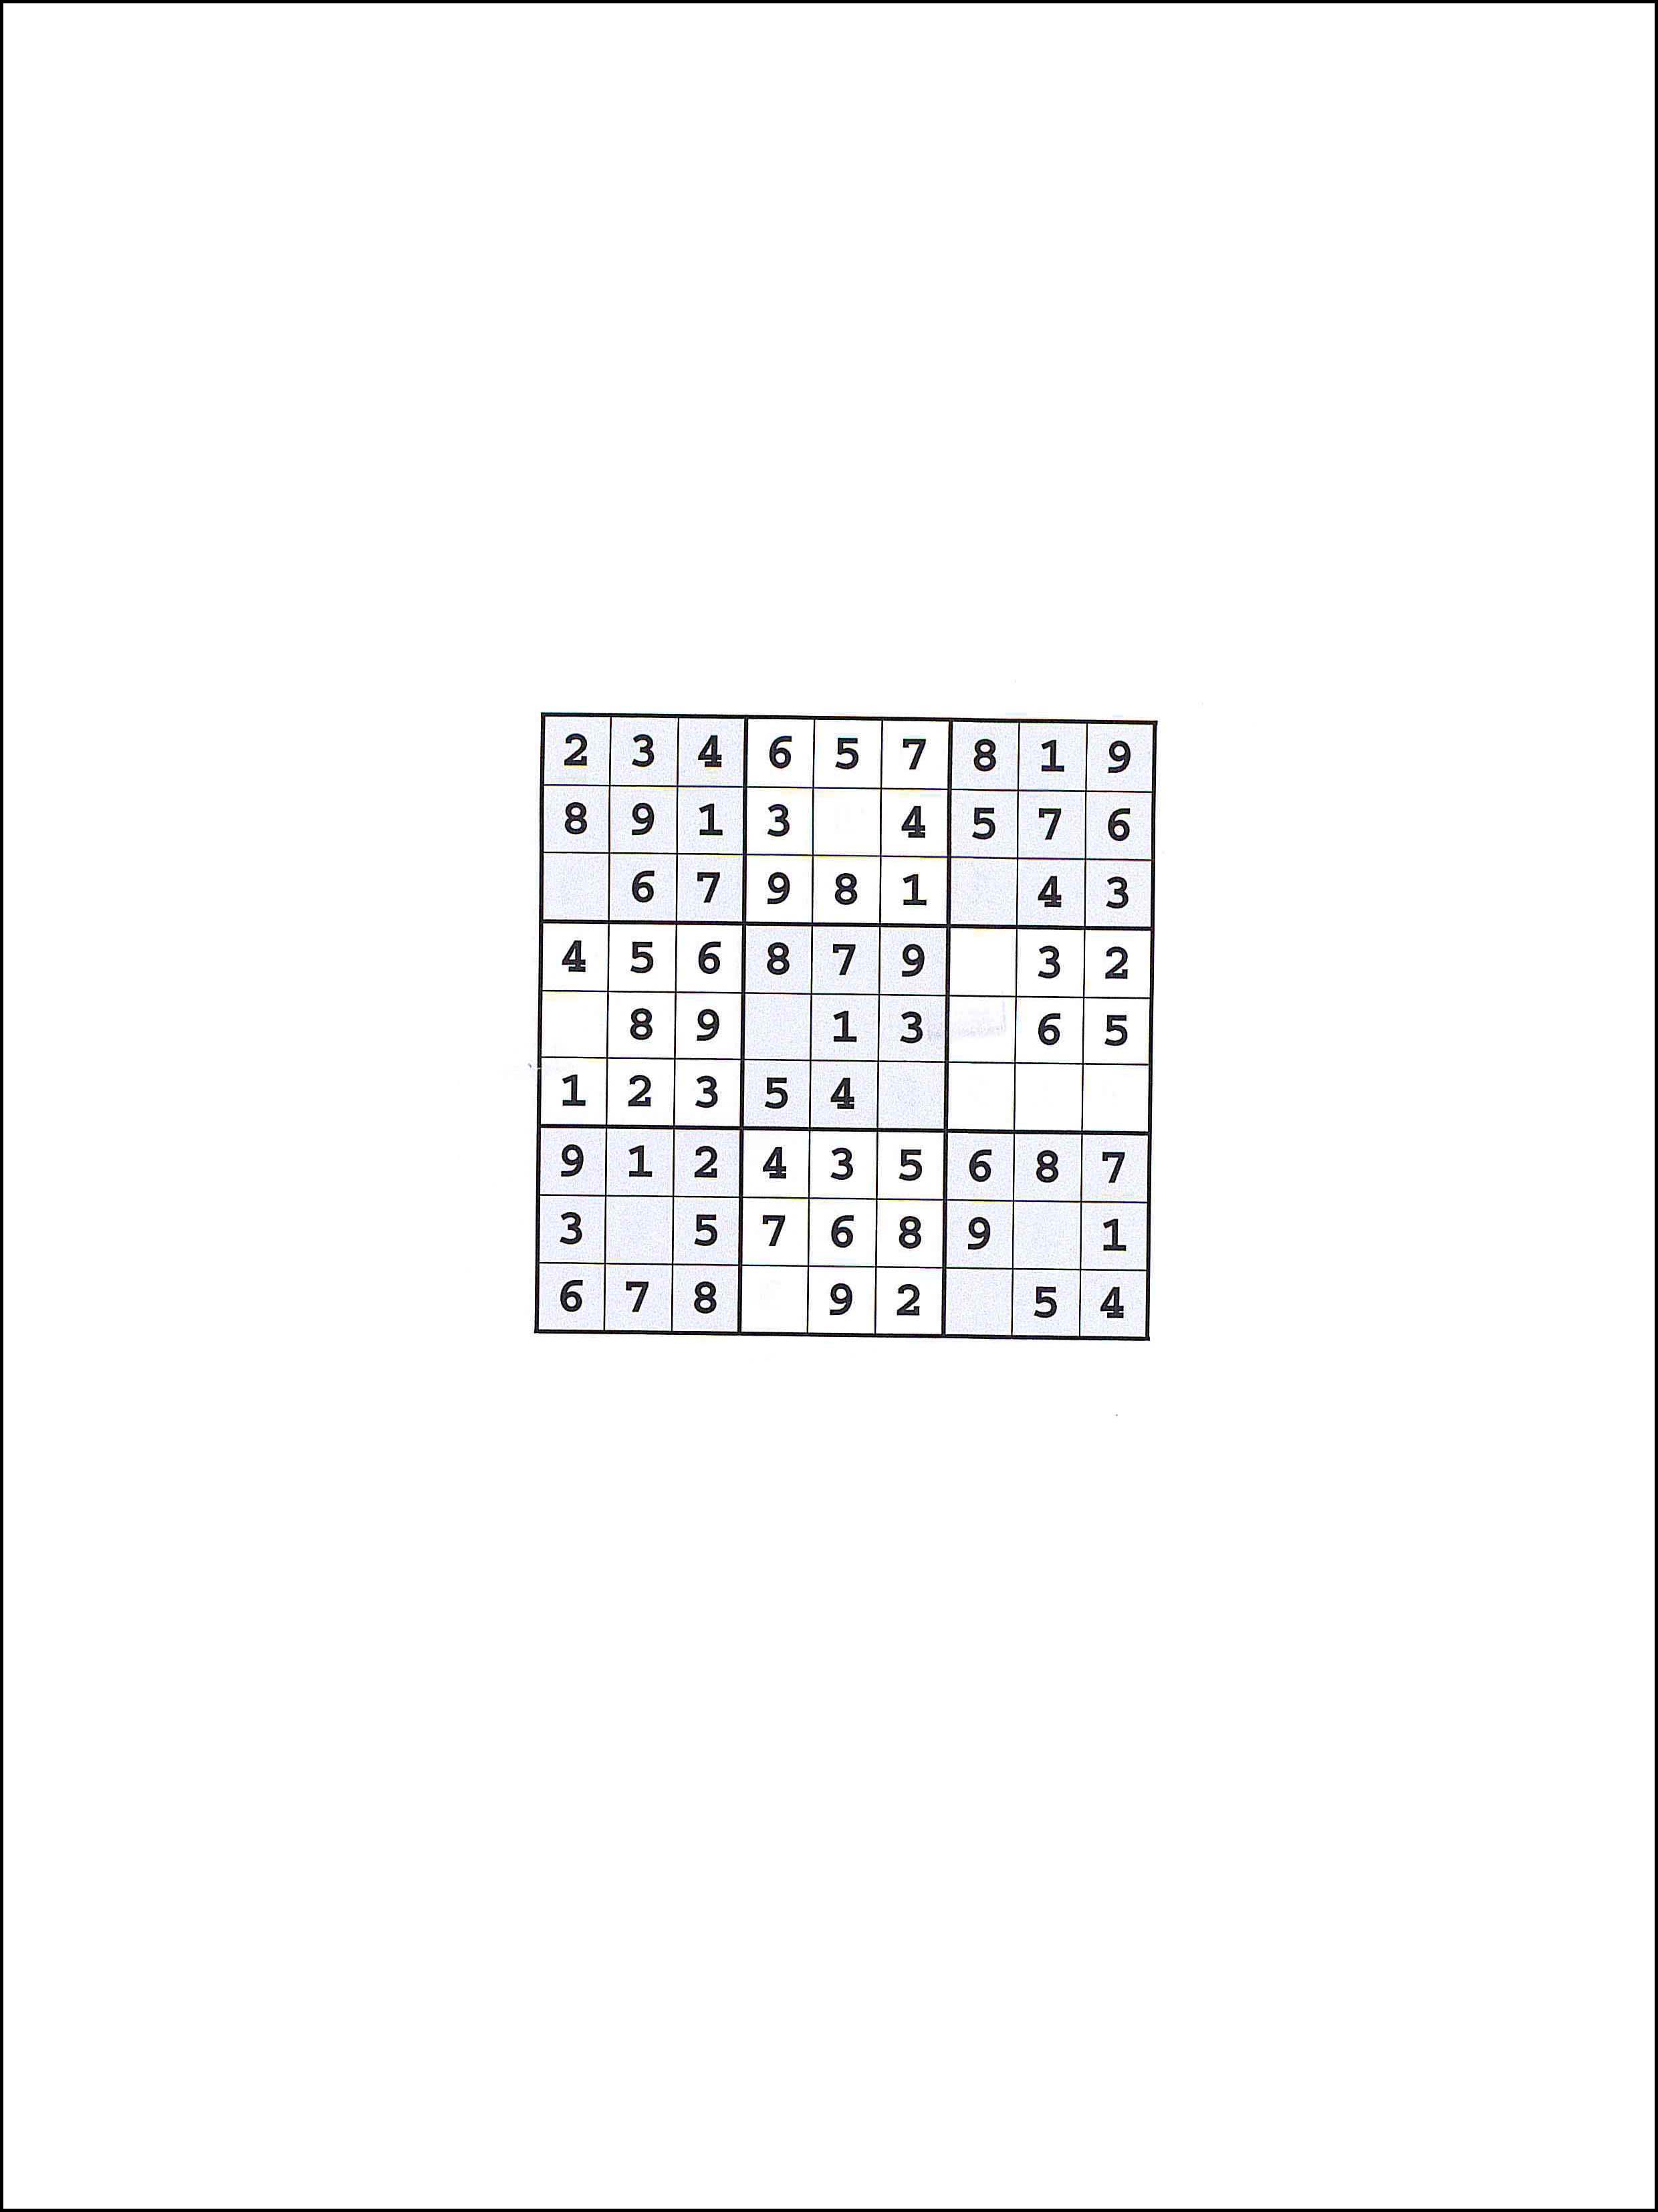 Día Bienvenido Secreto Actividades para niños para imprimir Sudoku 9x9 104